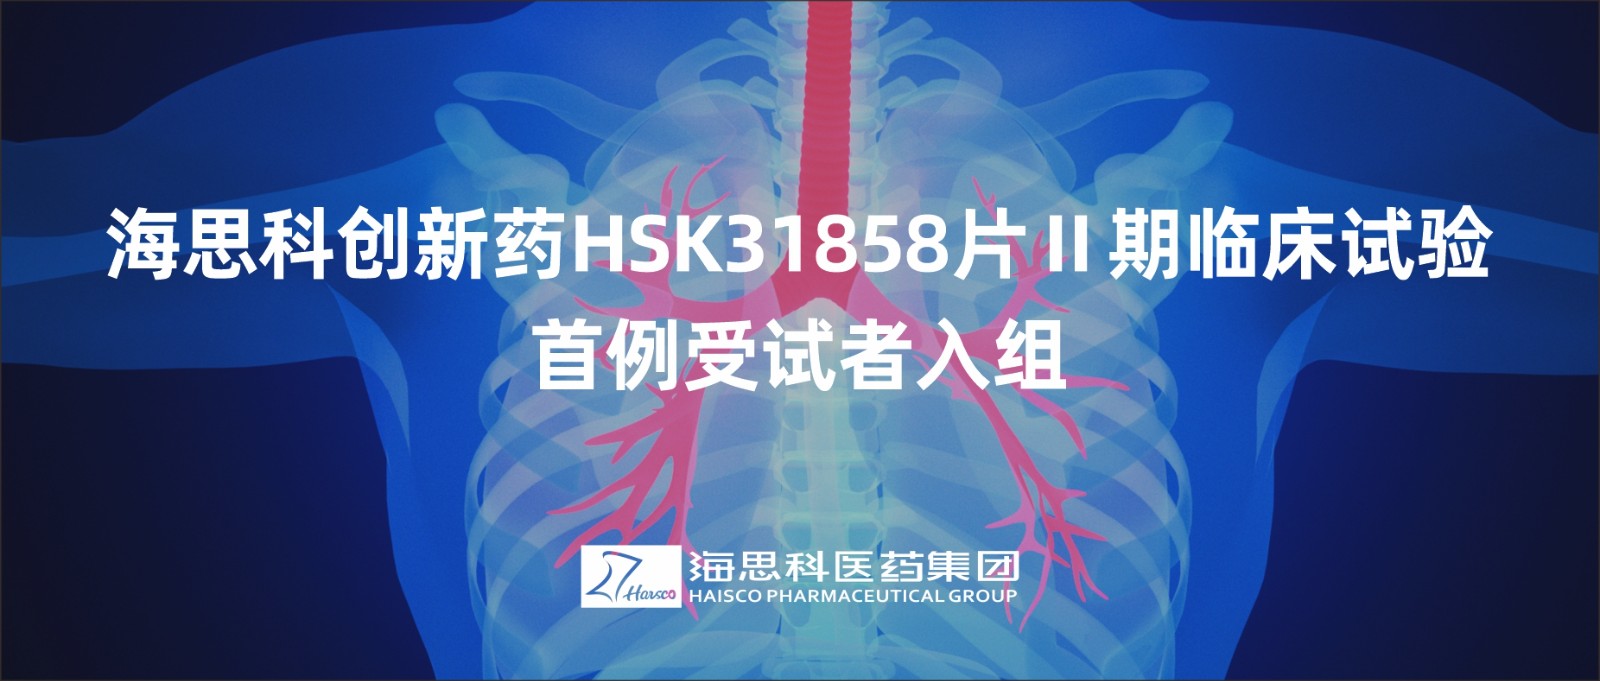 AG电投厅创新药HSK31858片Ⅱ期临床试验首例受试者入组